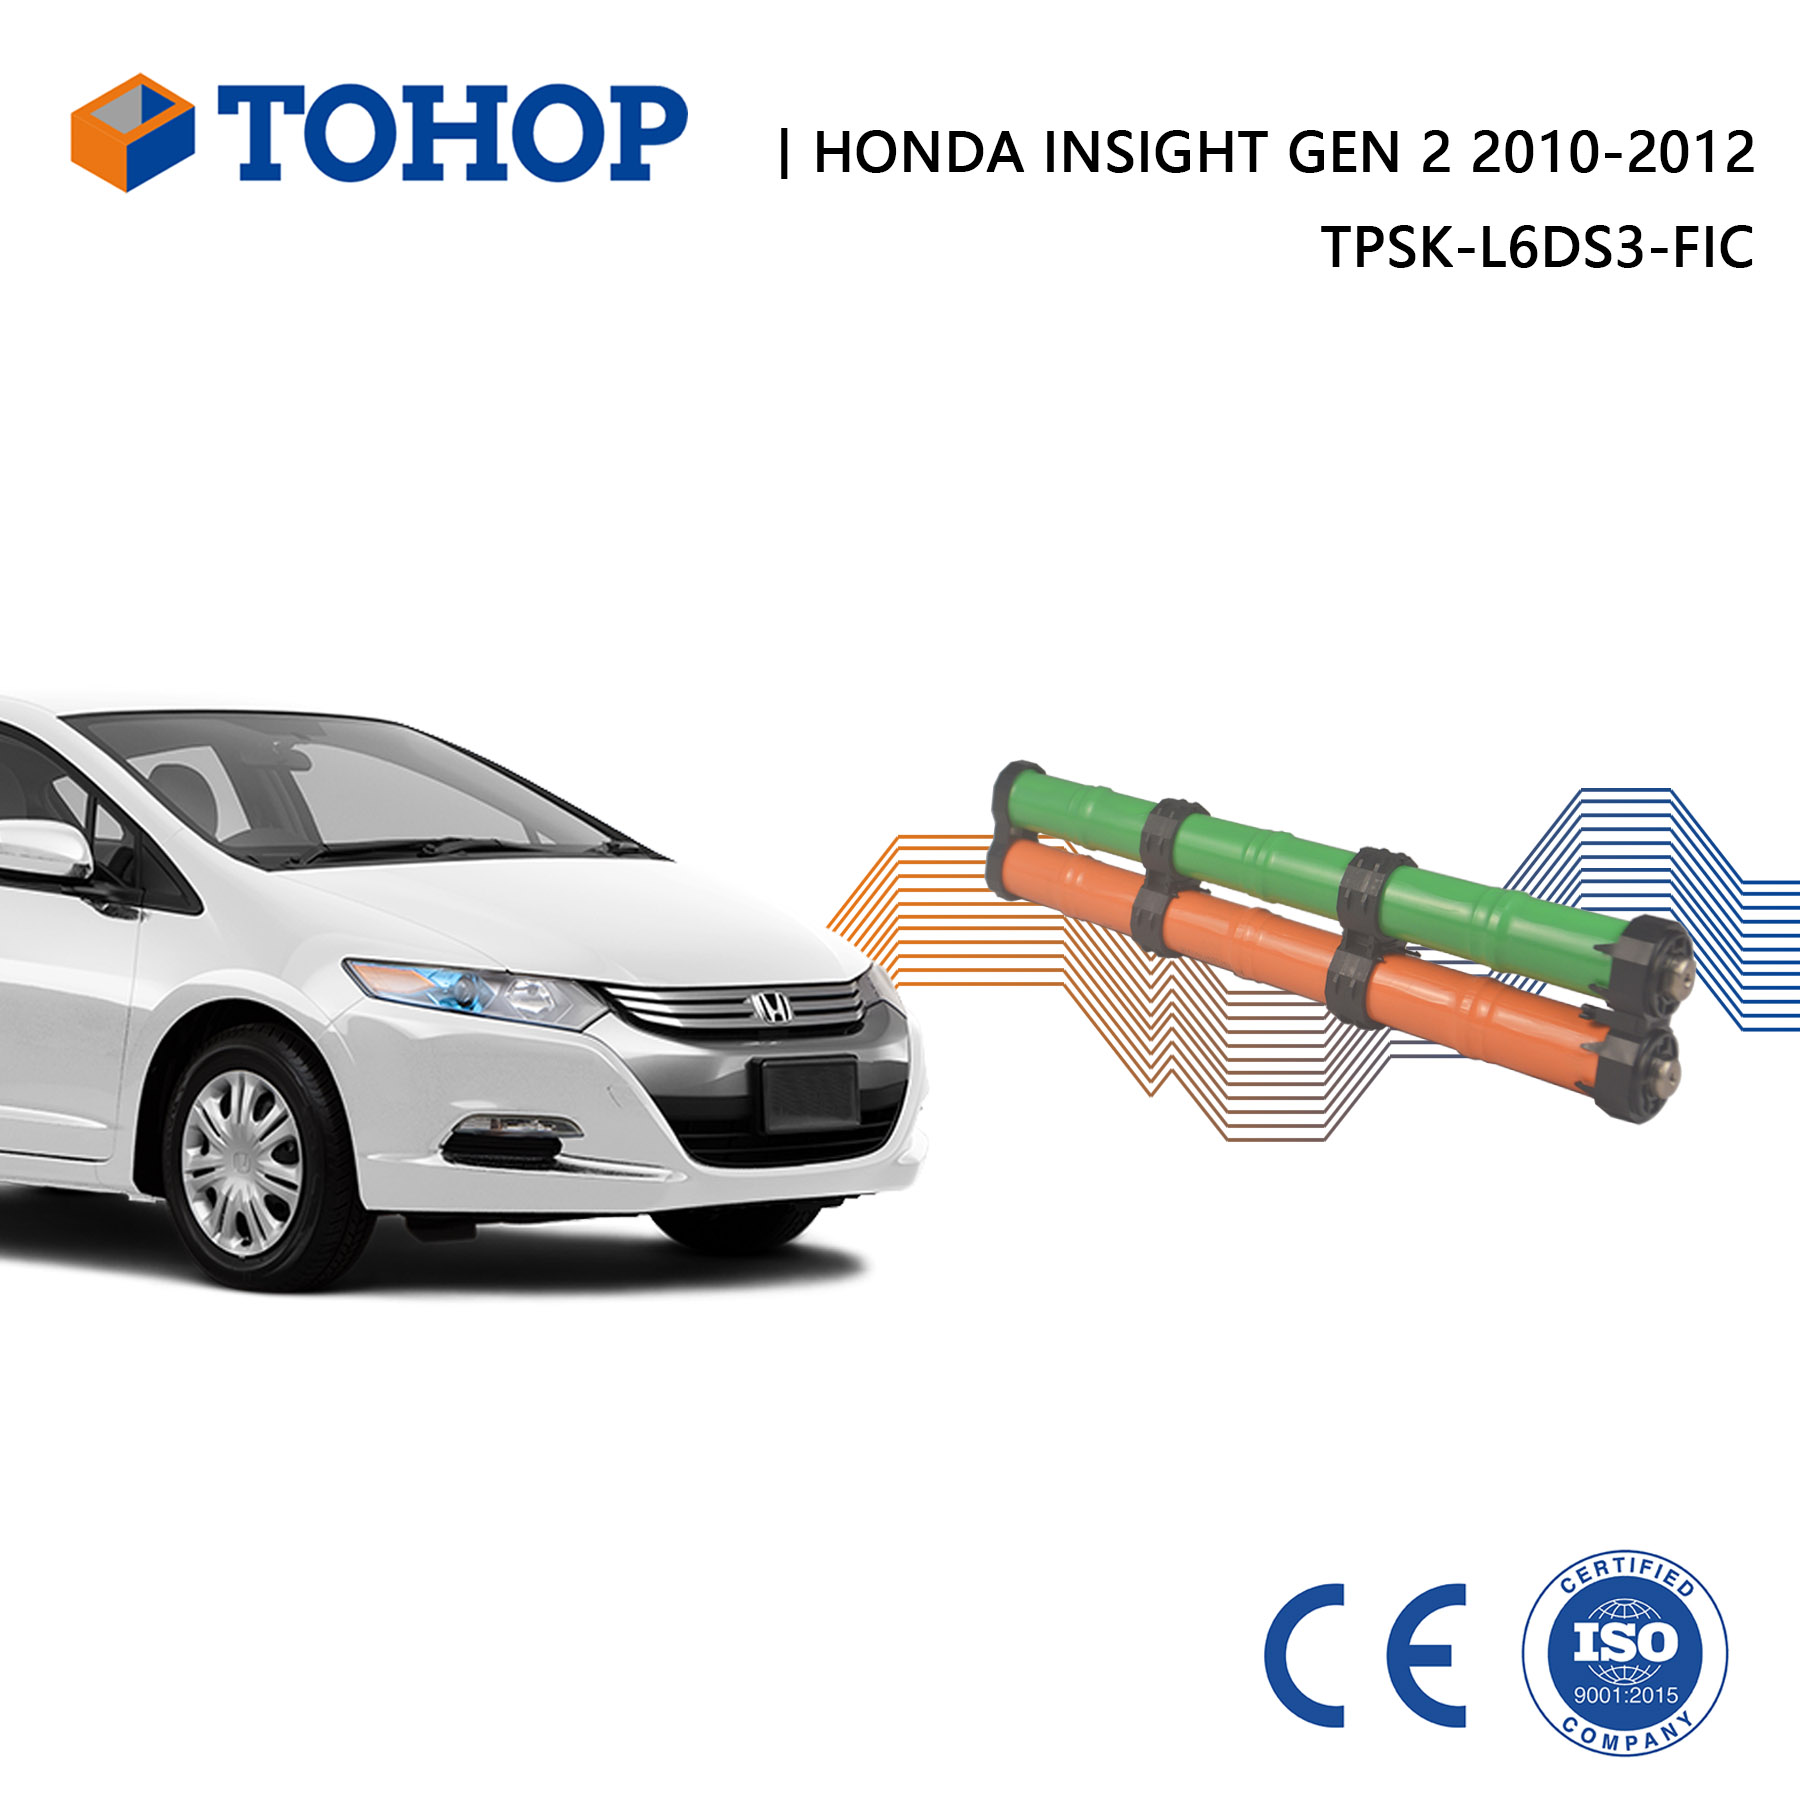 Batteria nuovissima Honda Insight Gen 2 Hyrid